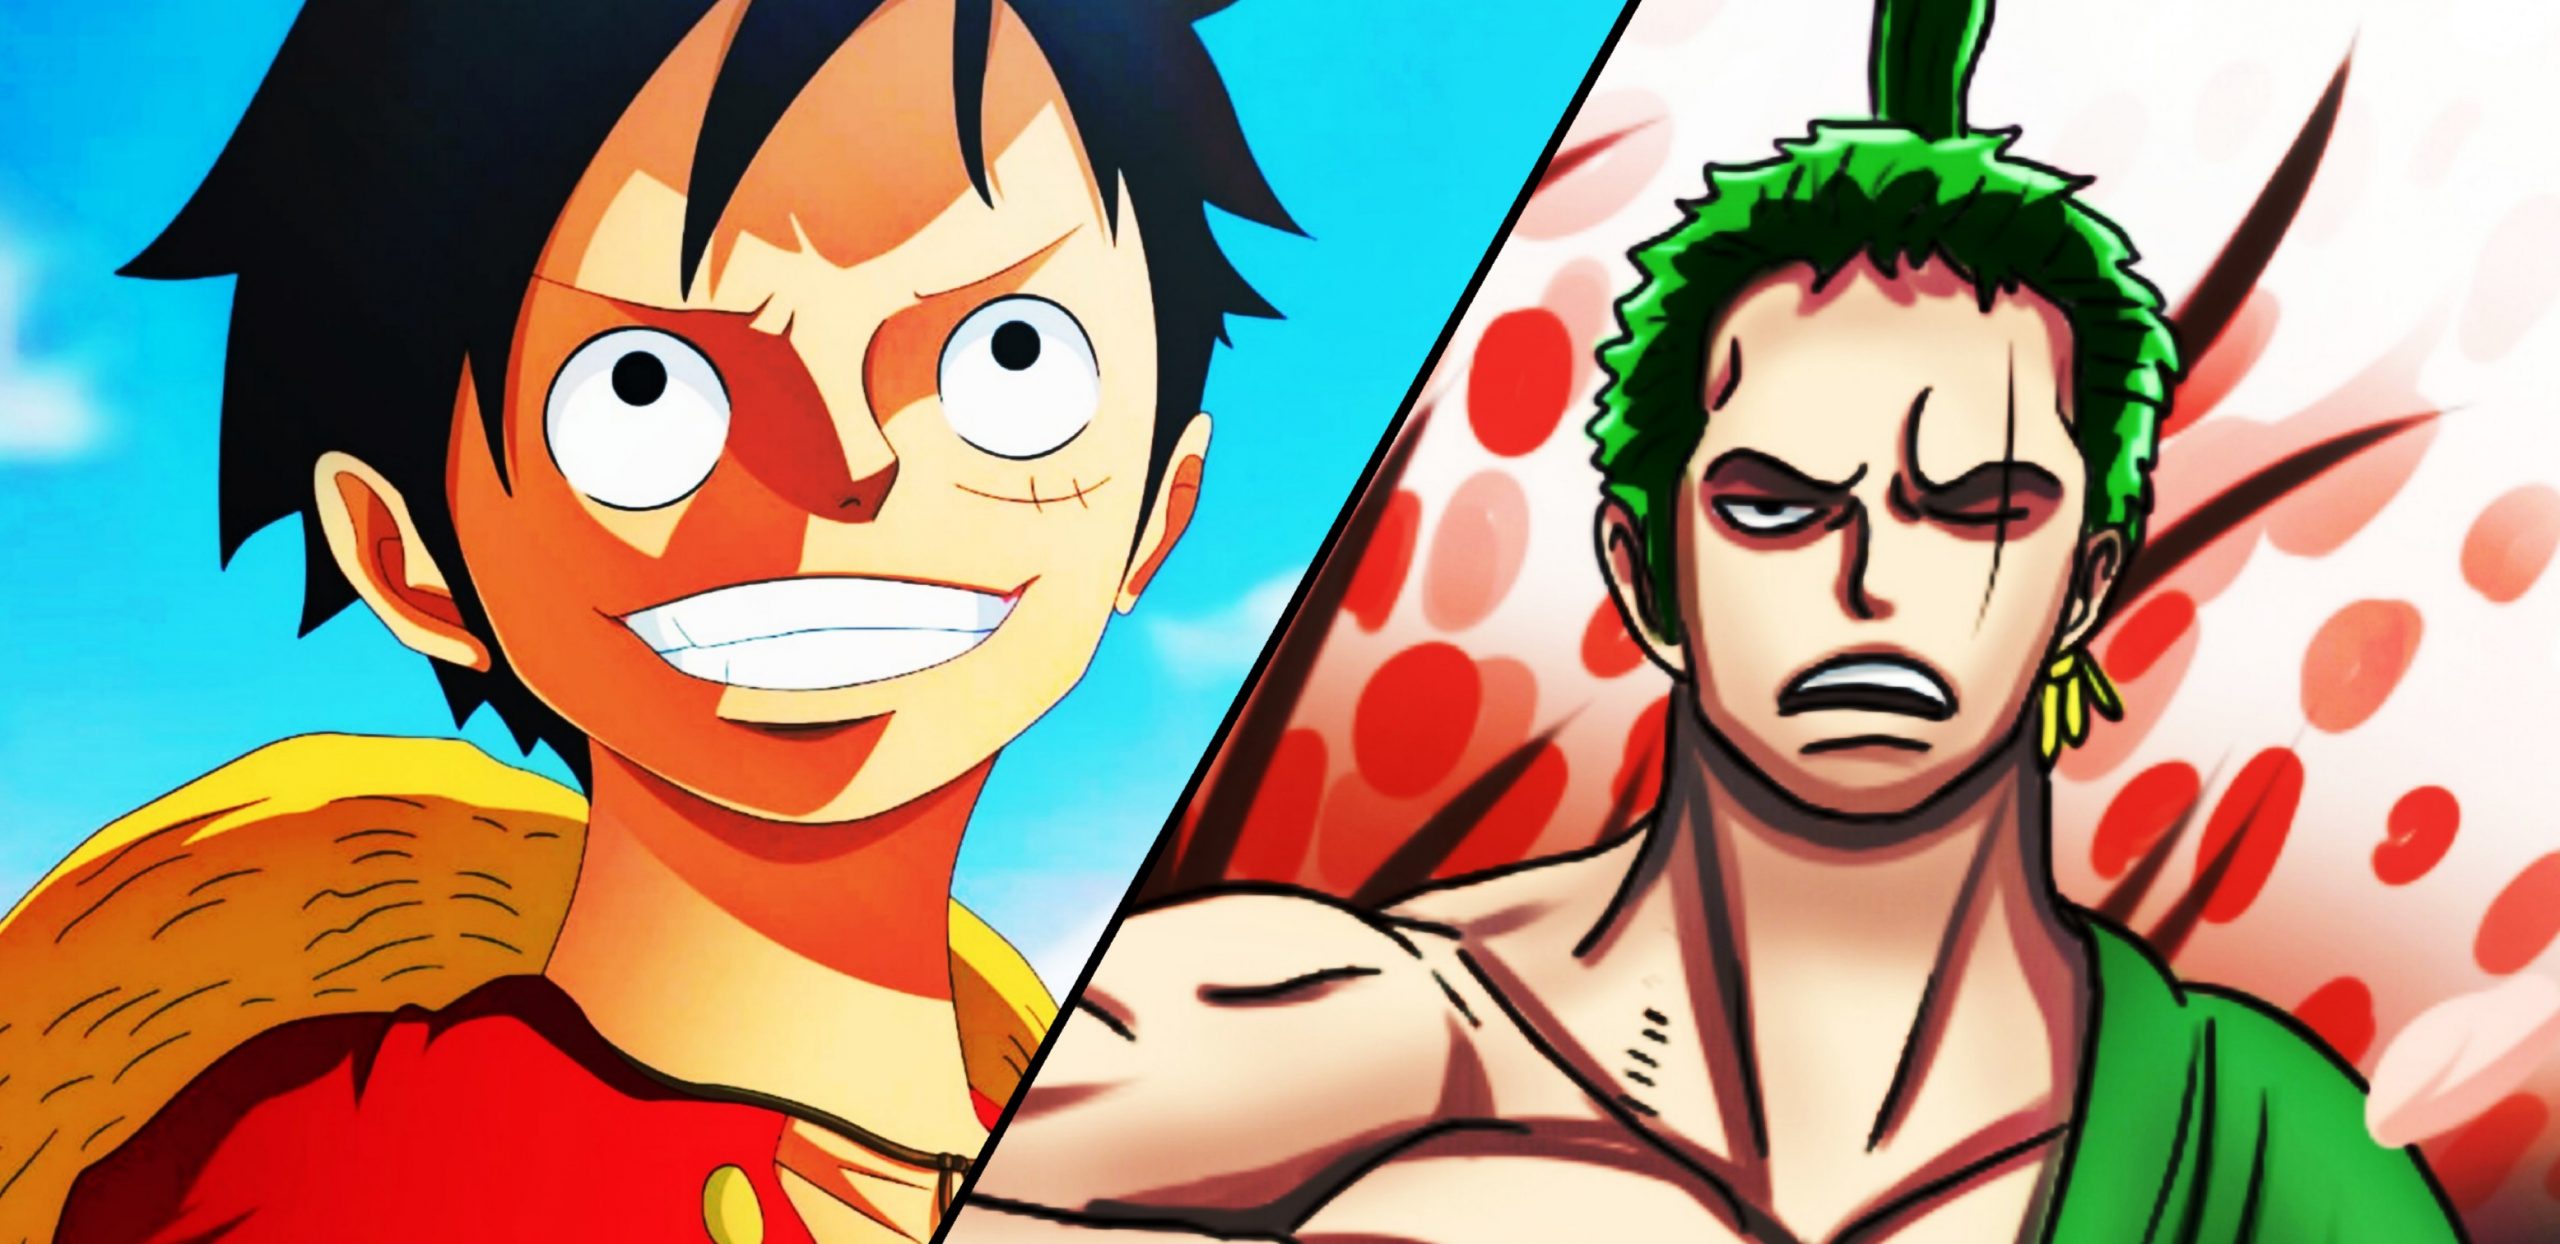 Xem hình ảnh Luffy và Zoro - hai nhân vật đầy nghị lực và sự cống hiến trong bộ truyện One Piece. Cùng xem những tình huống thú vị khi cả hai cùng hợp tác với nhau!